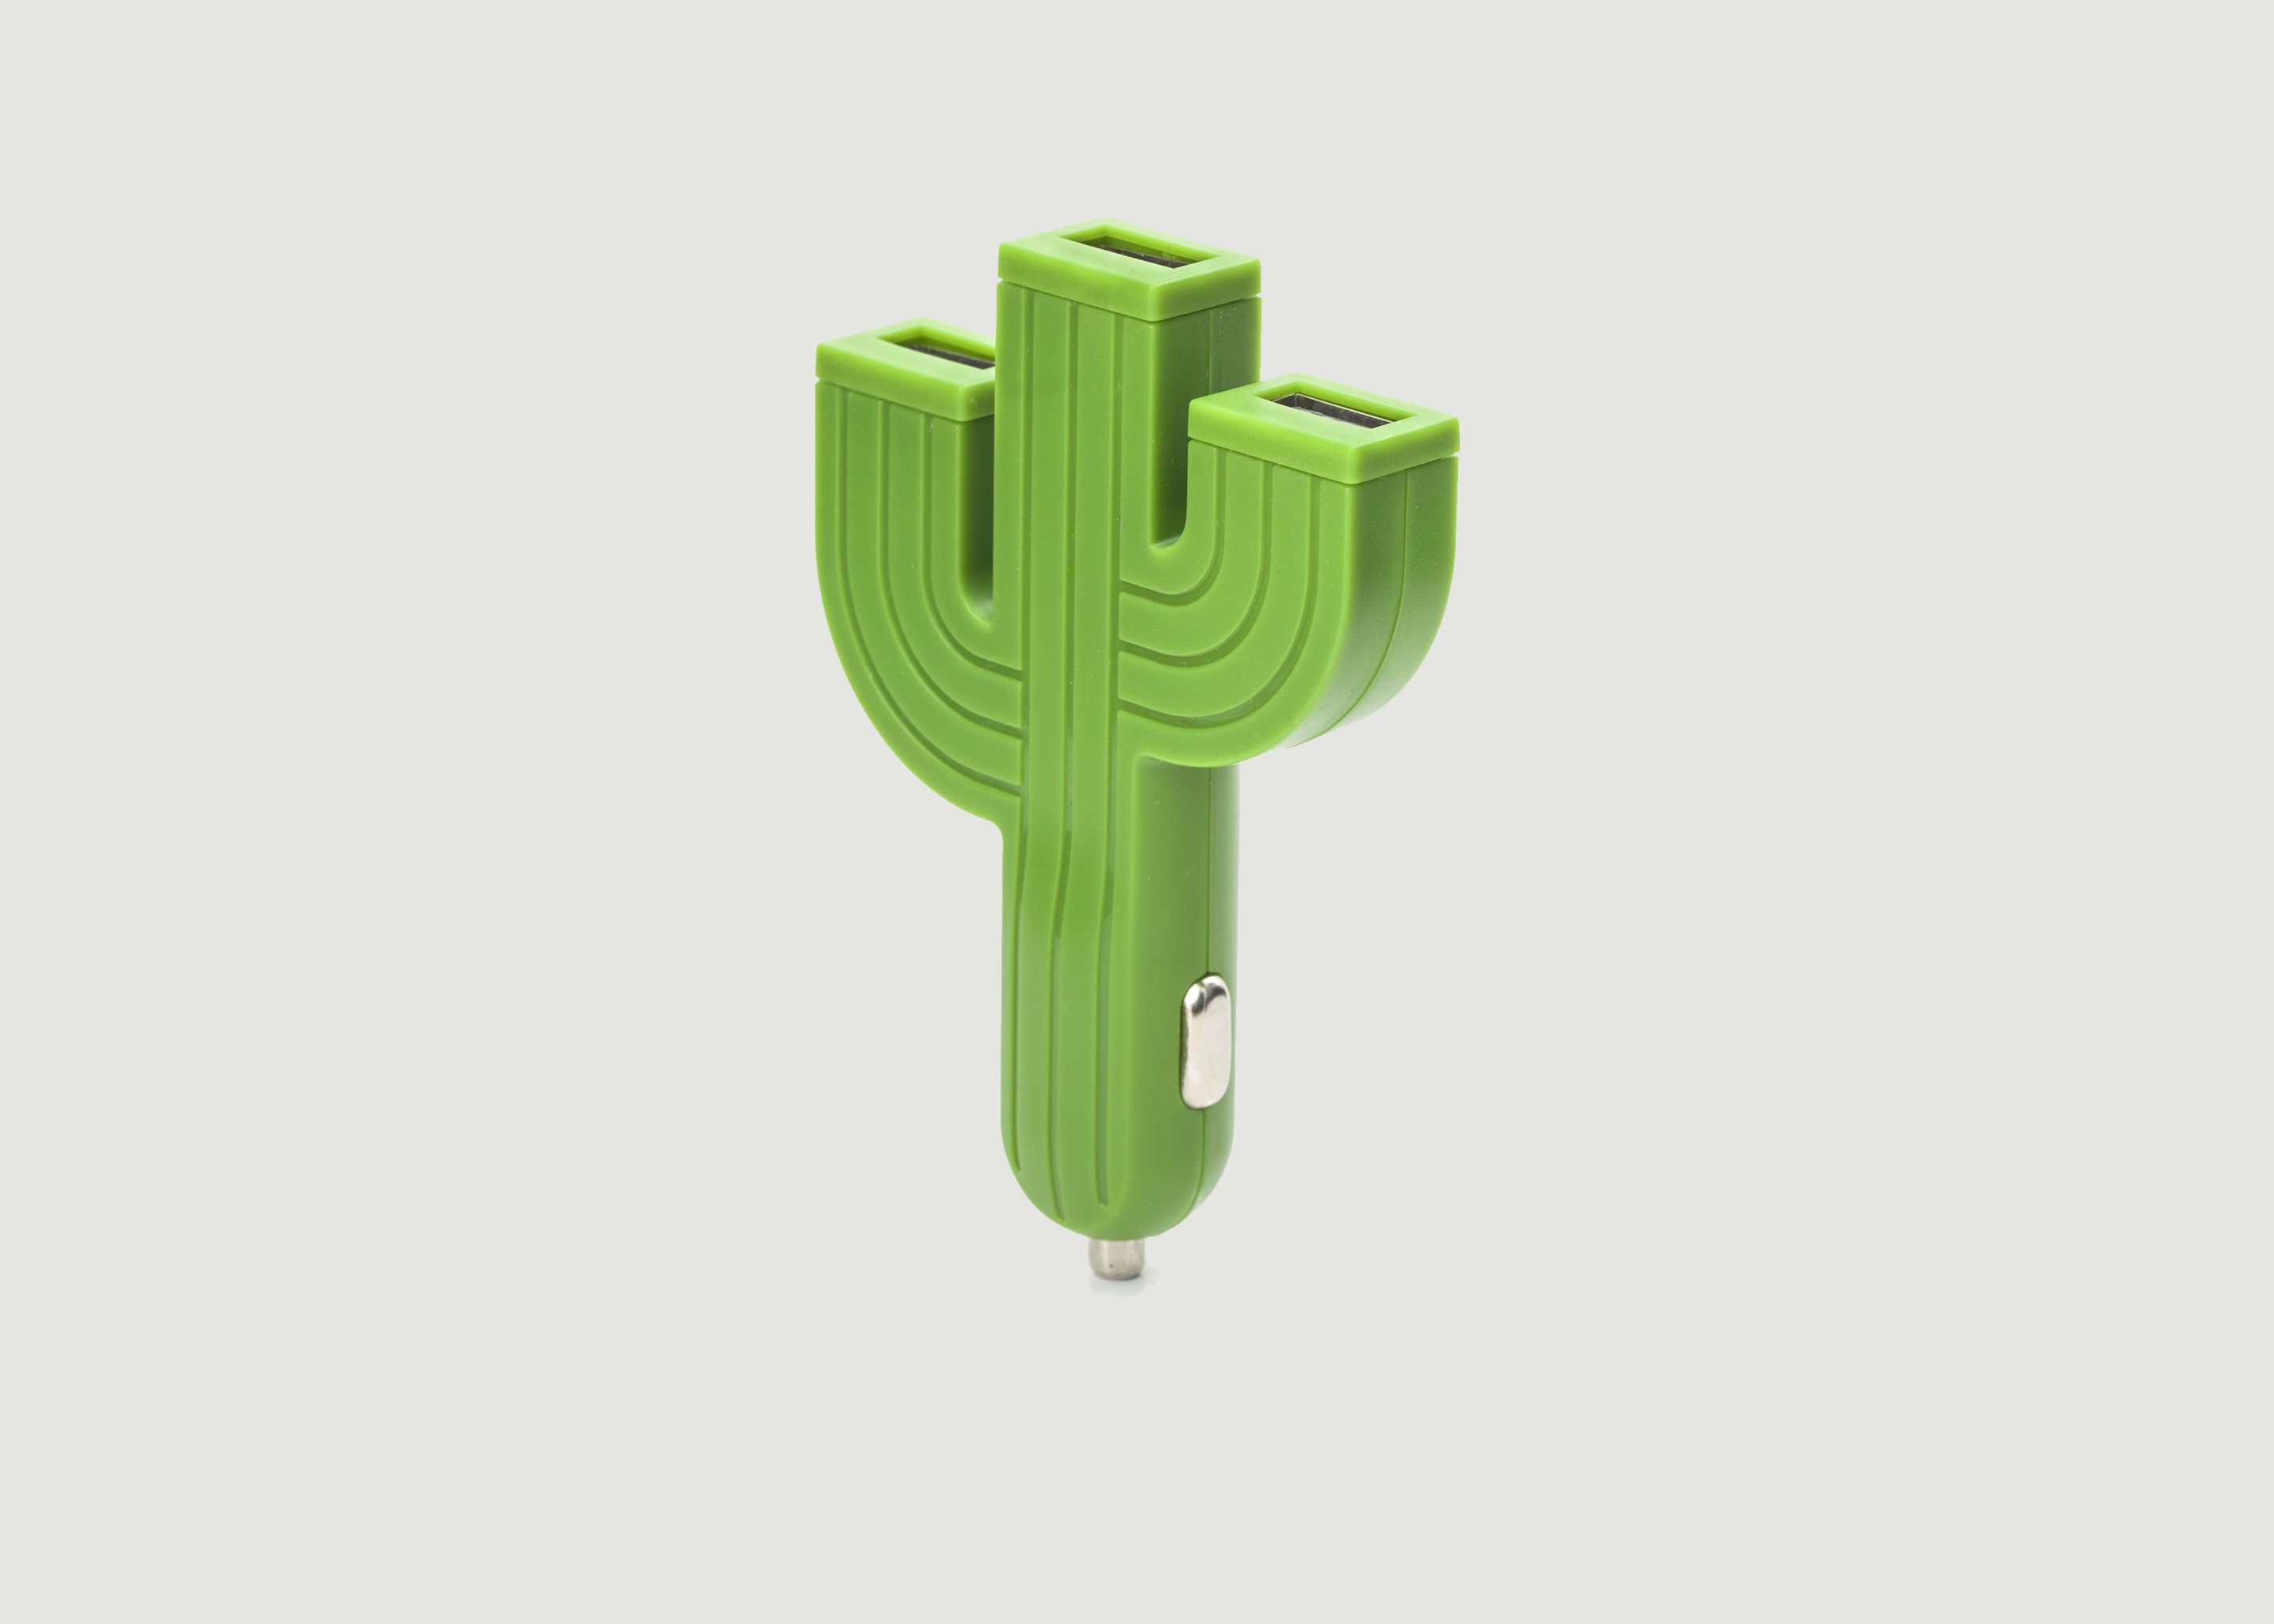 Cactus cigar lighter USB charger socket - Kikkerland